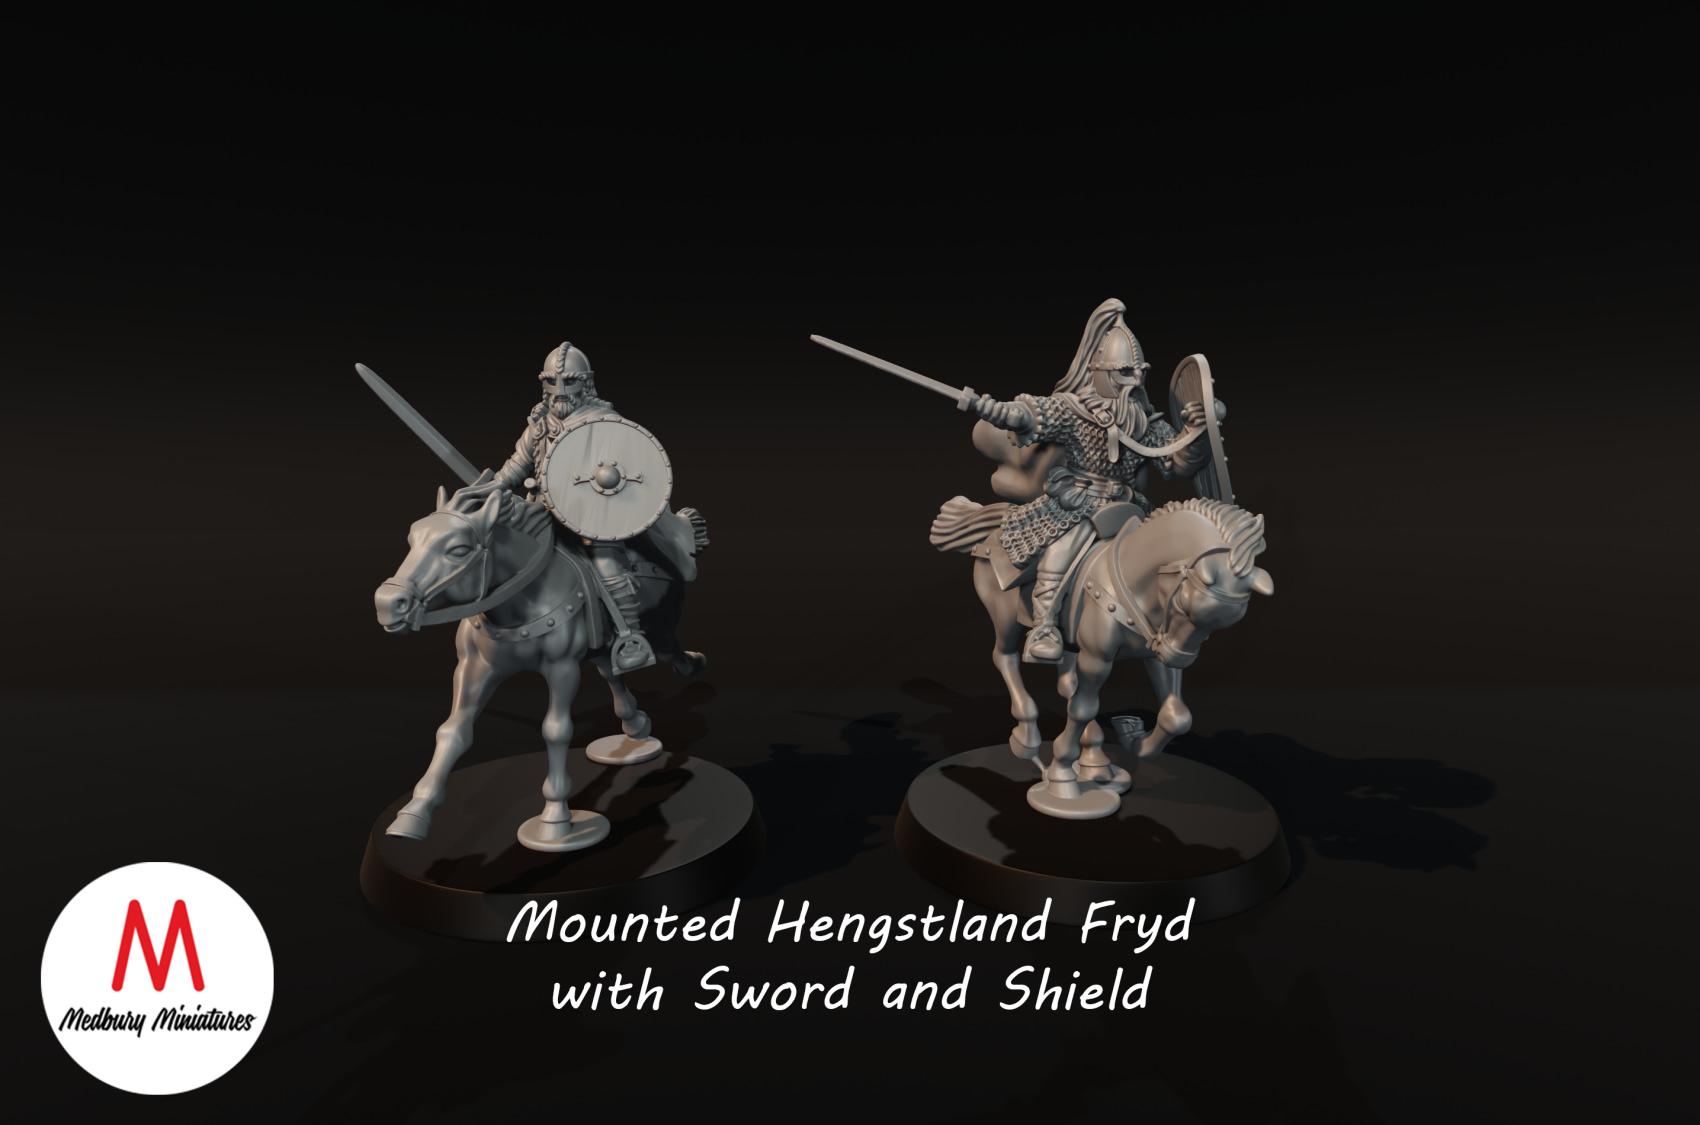 Shieldmaiden's of Rohan get Hot defending the Riddermark : r/LOTRbaddies